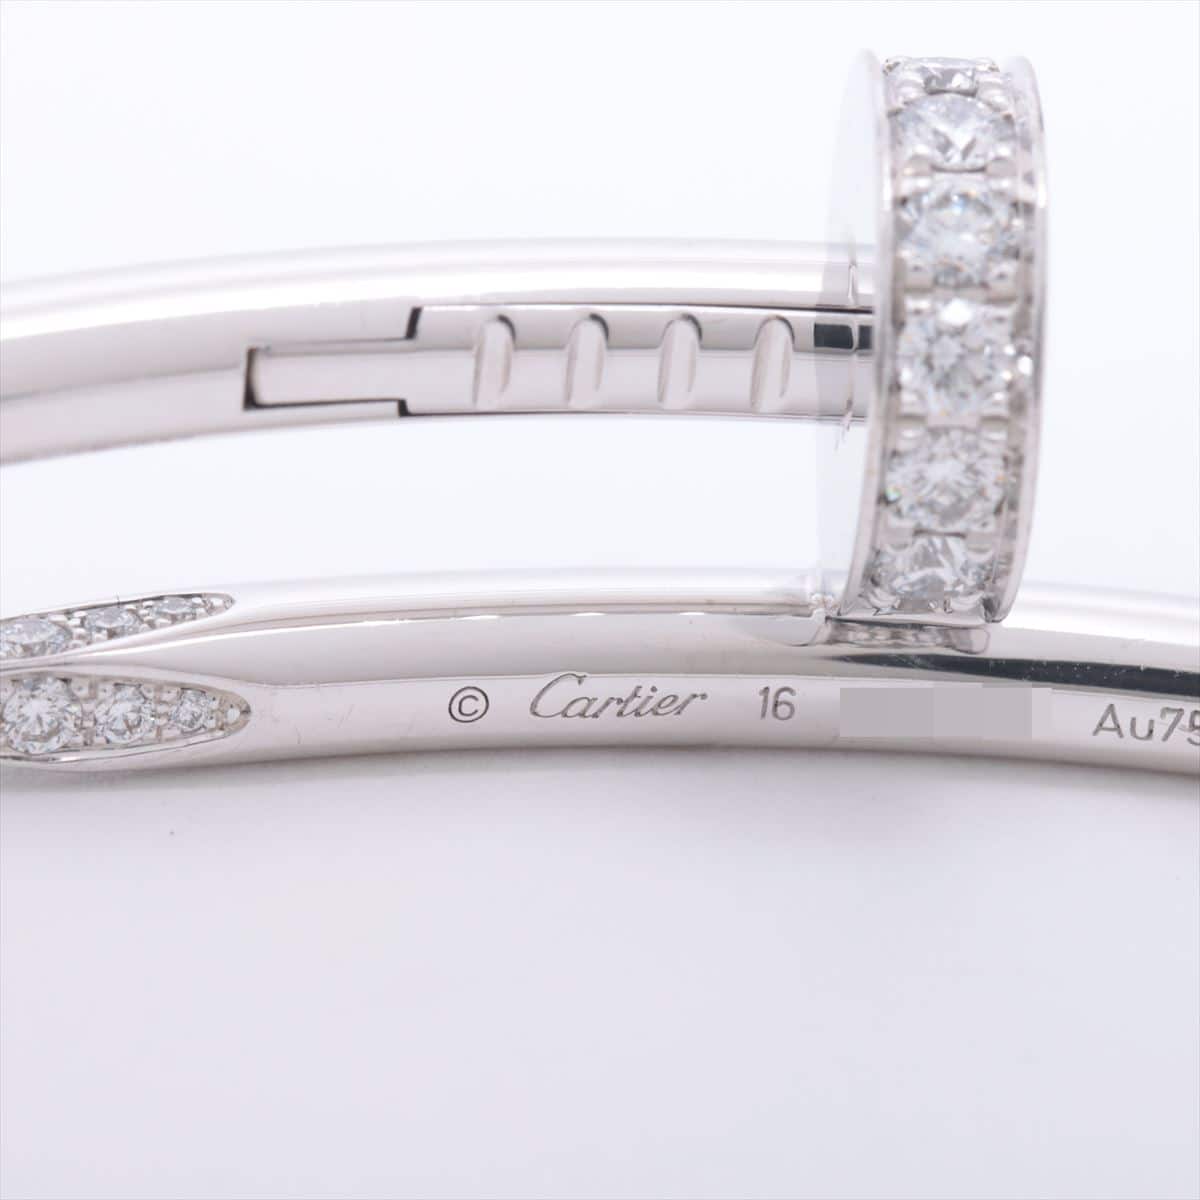 Cartier Juste un Clou diamond Bracelet 750 WG 32.1g 16